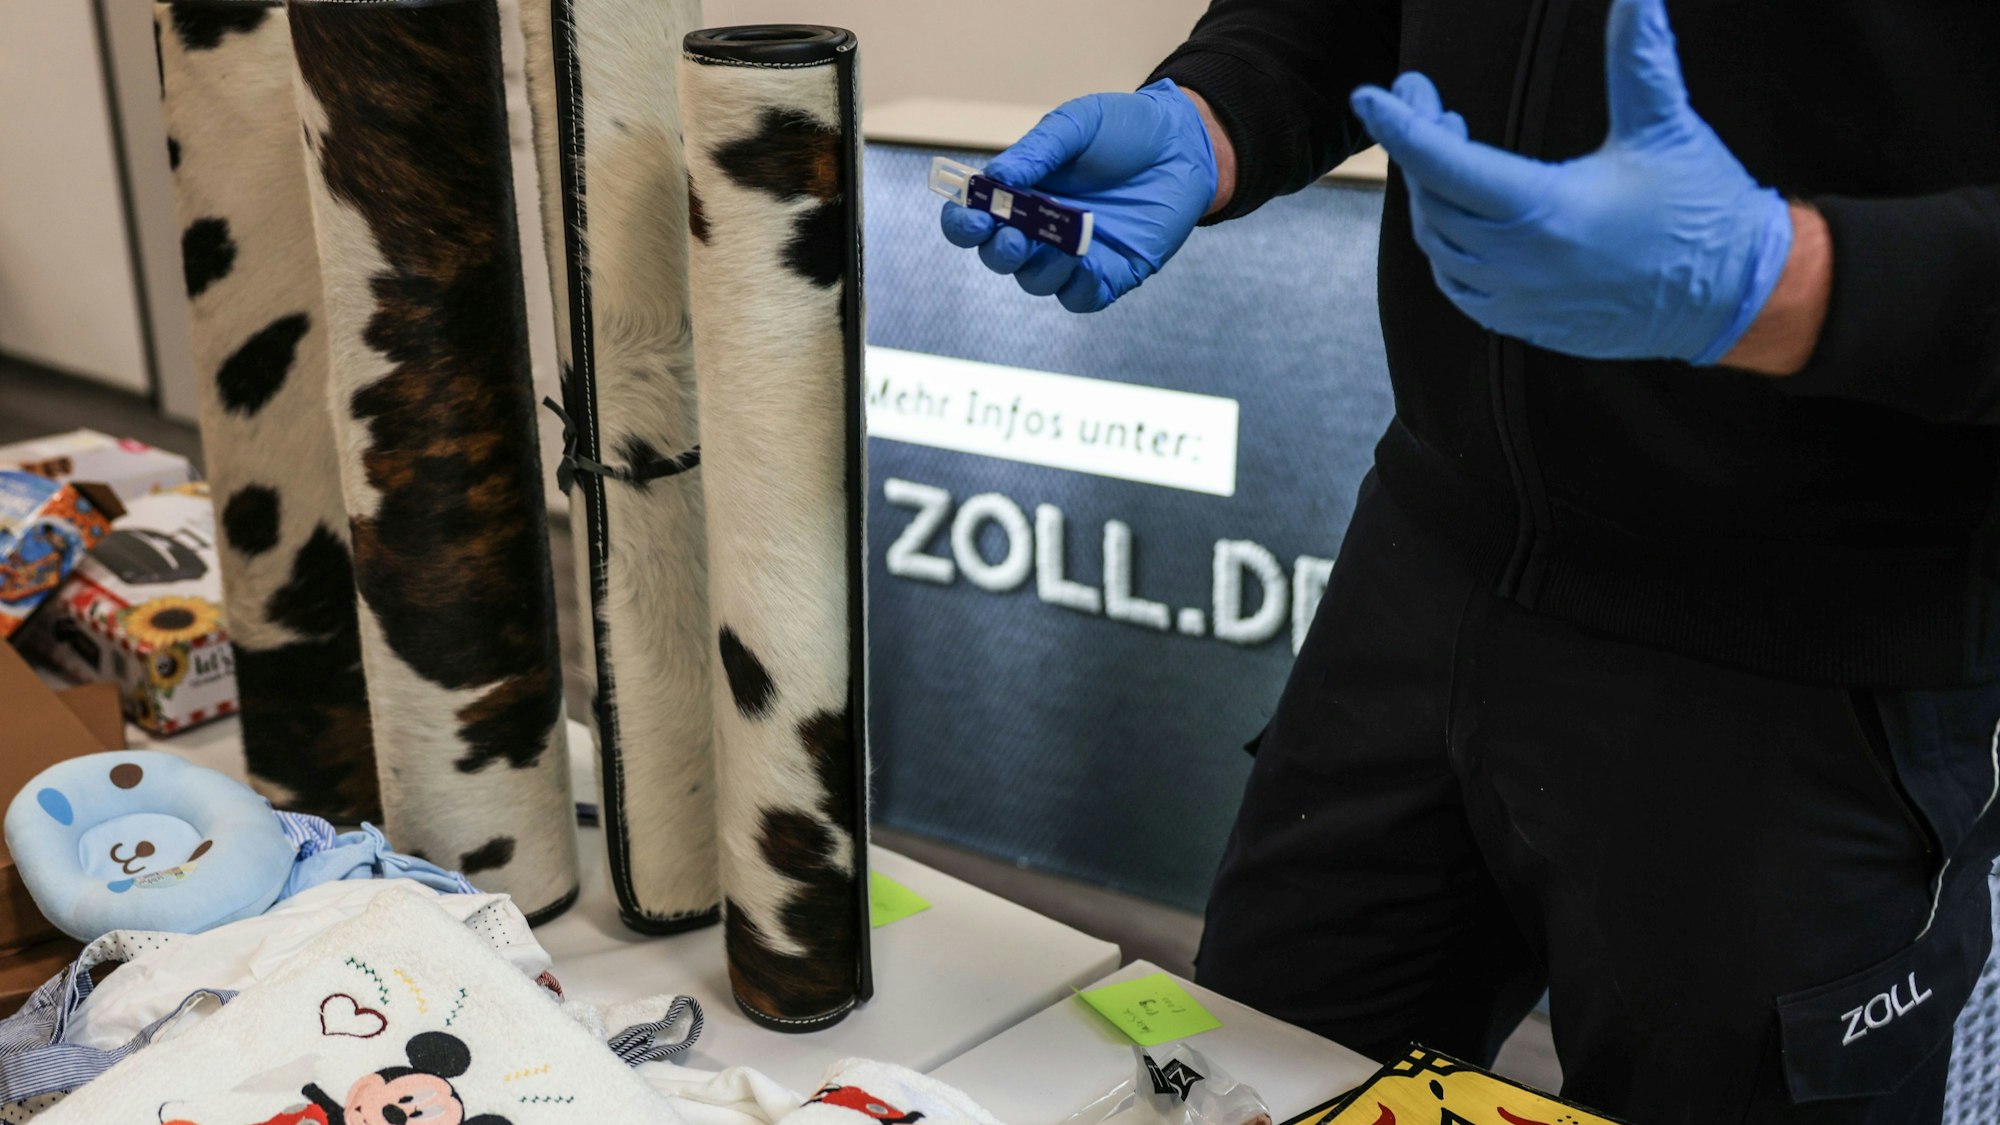 Ein Mitarbeiter des Hauptzollamtes Köln zeigt ein Drogentestgerät hinter verschiedenen Drogenverstecken. (Symbolbild)